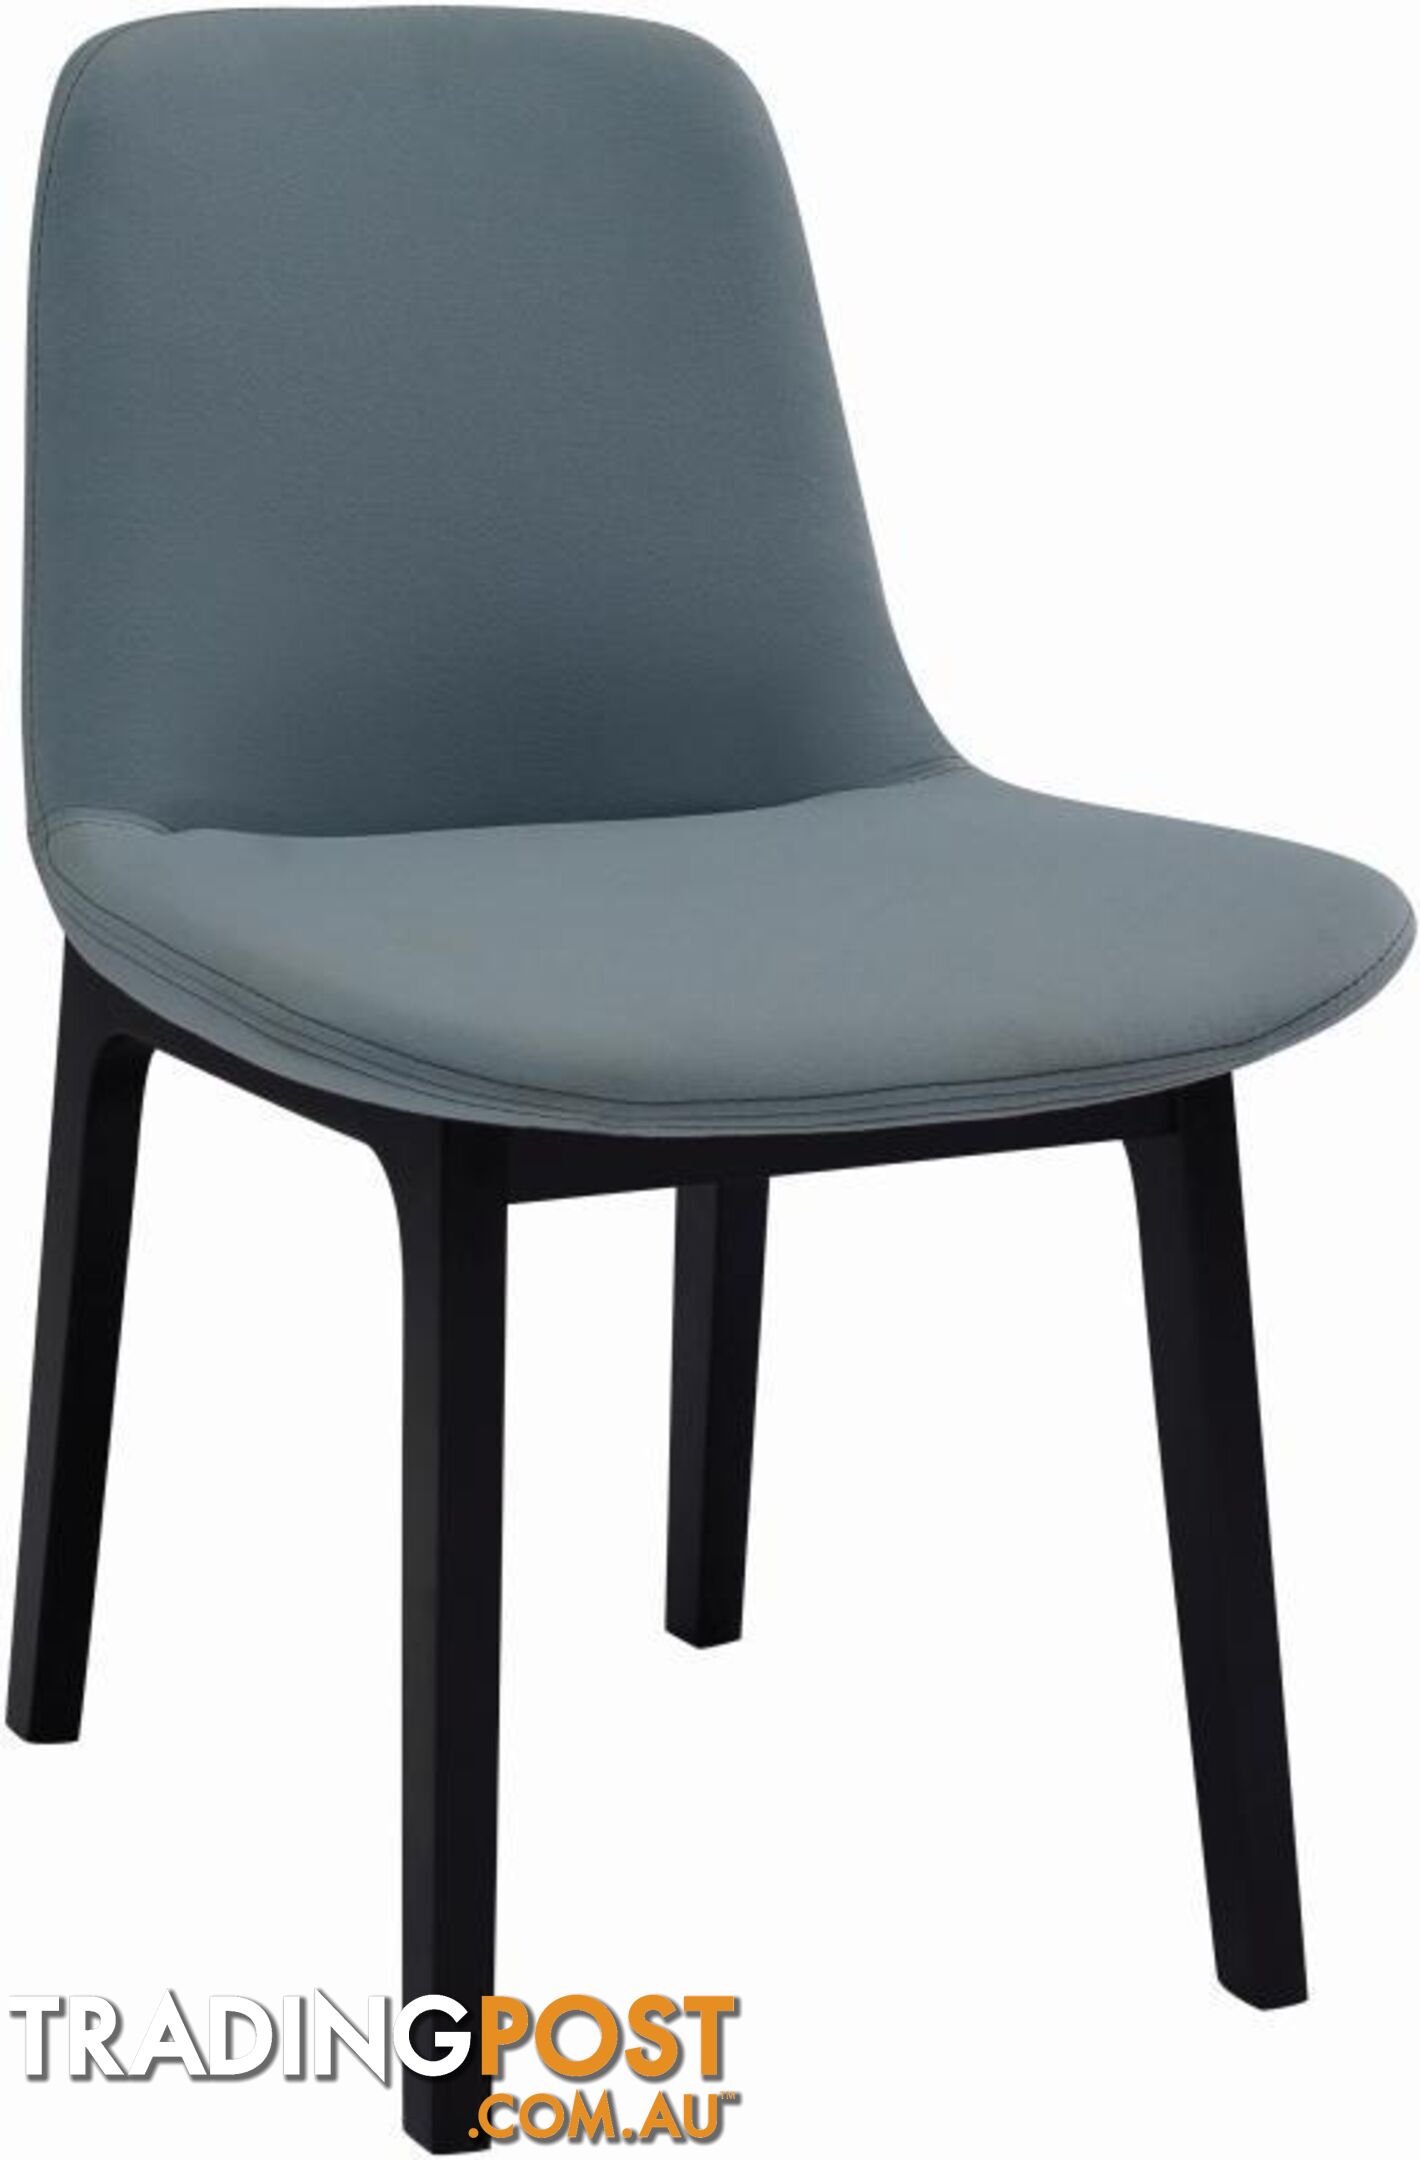 AURORA Dining Chair - Jade - AURORA_DC114-3102 - 9334719000855